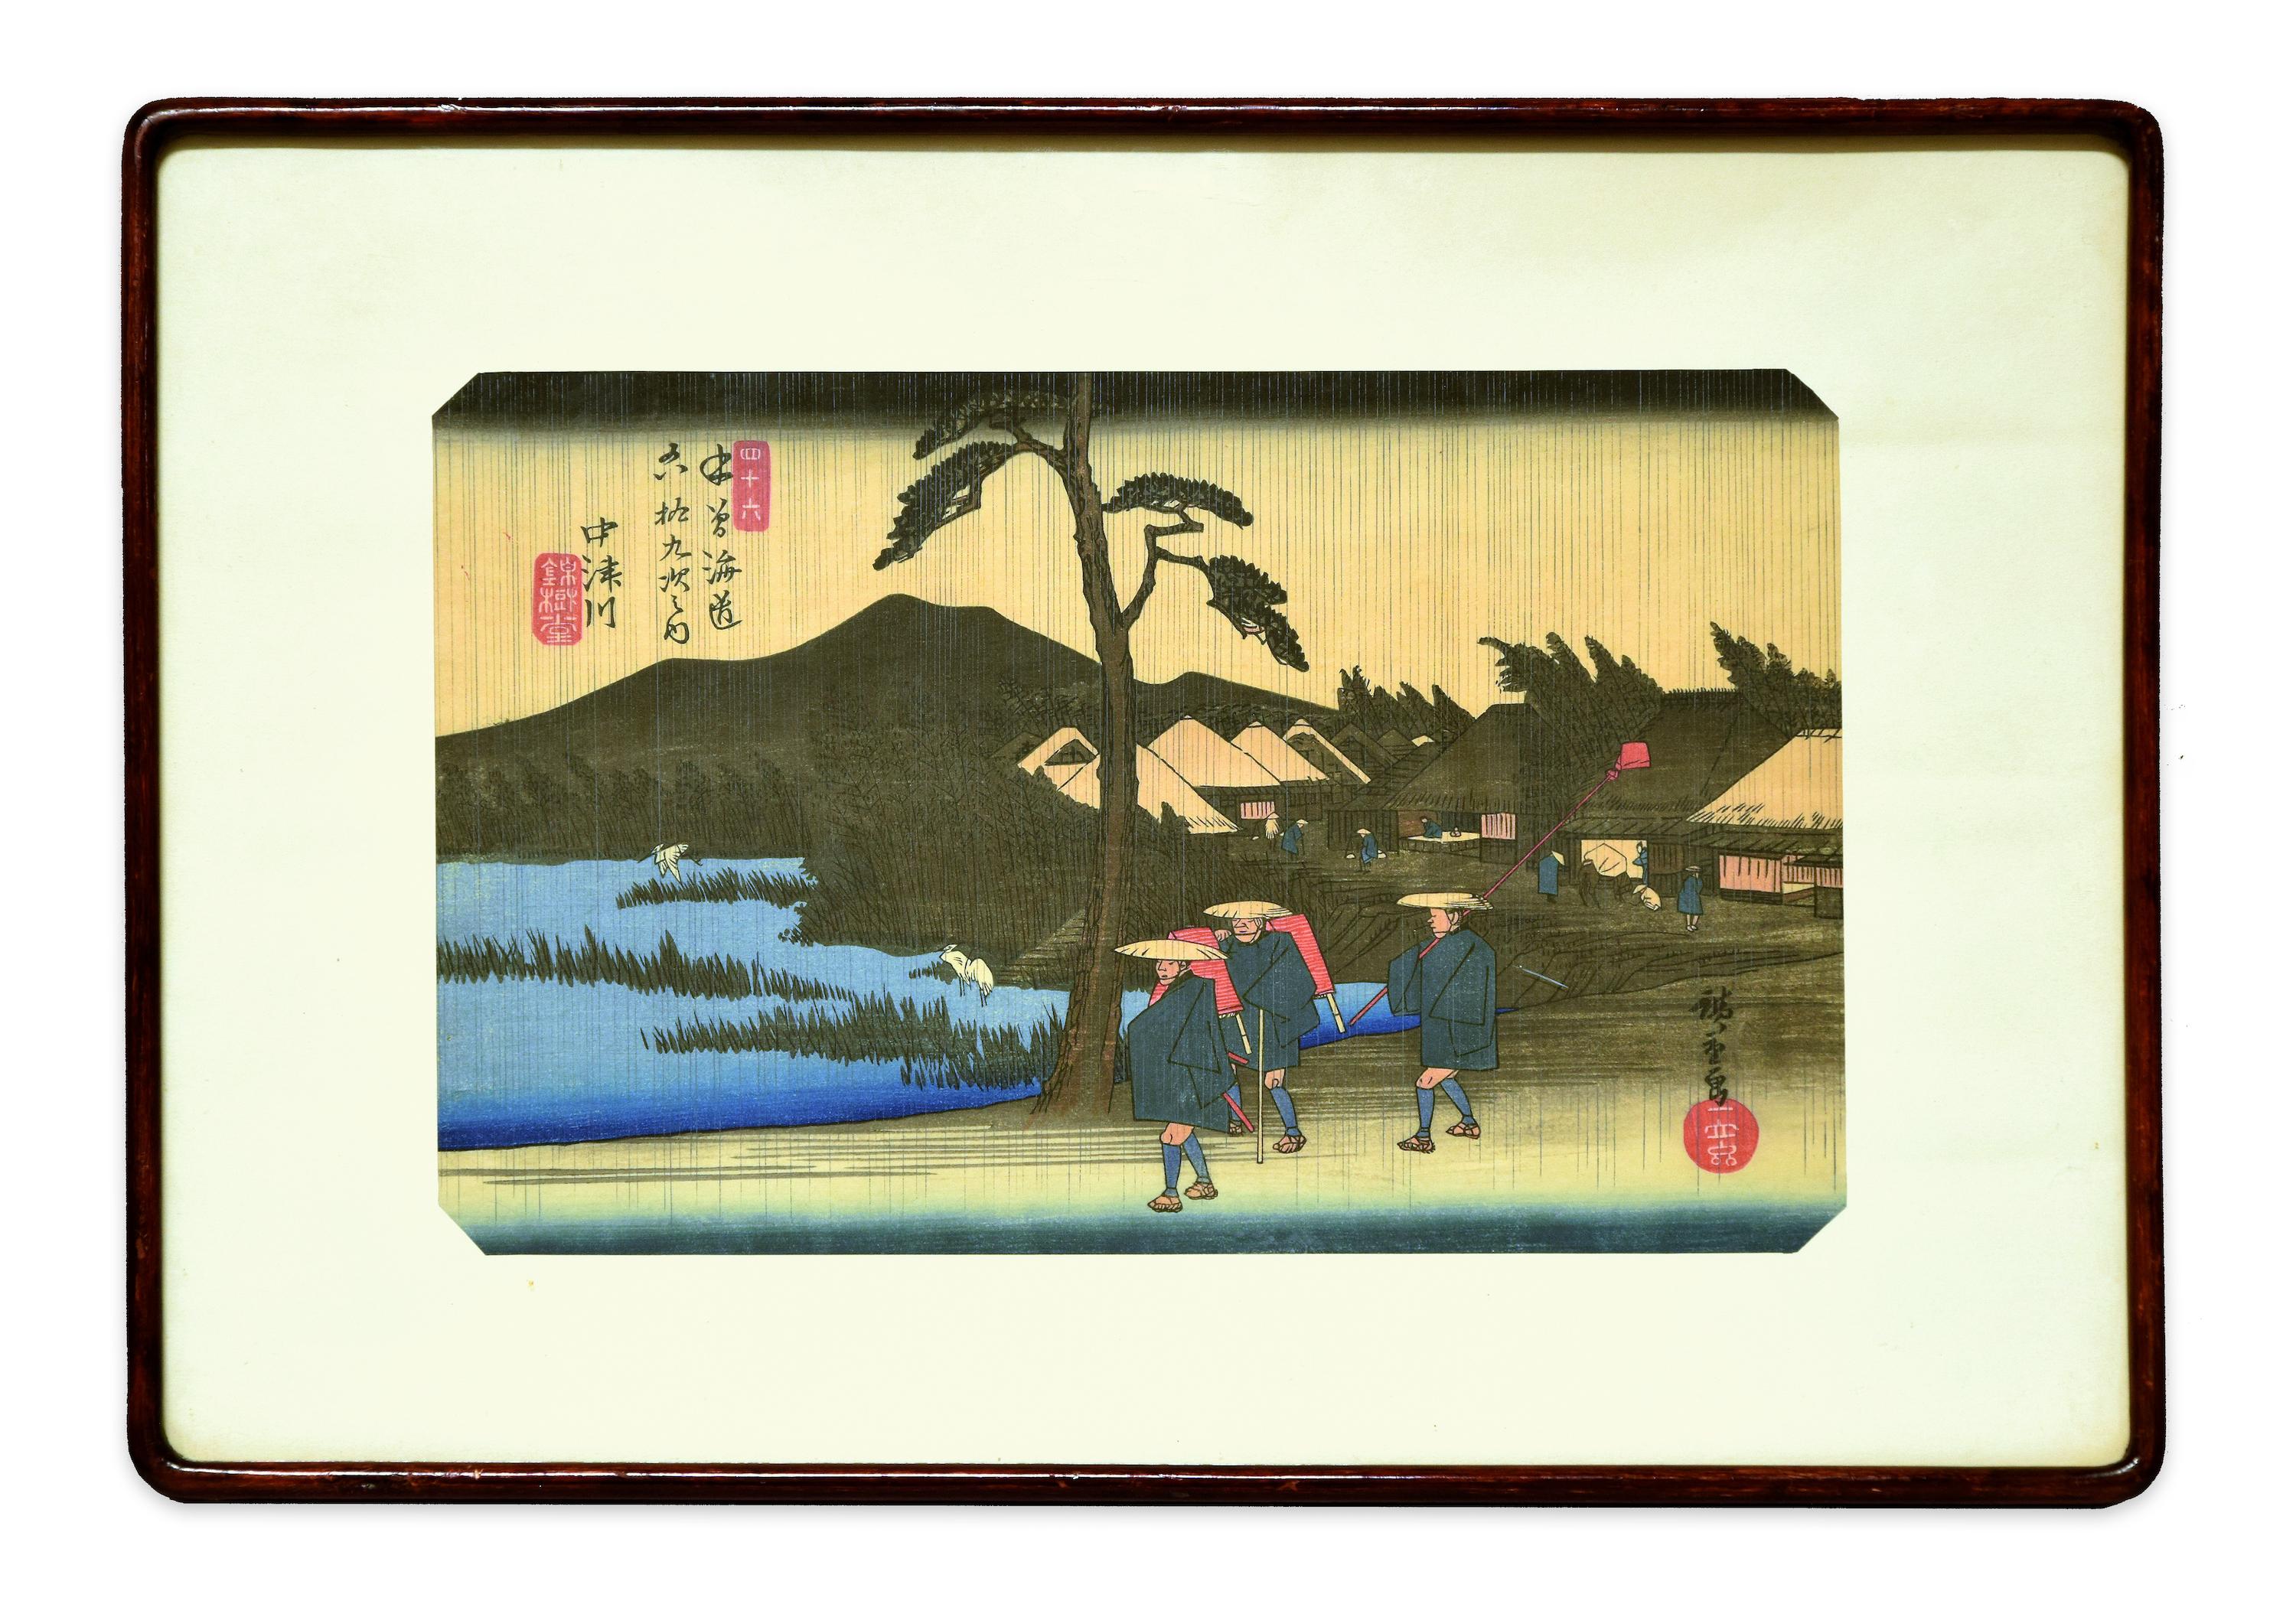 Nakatsugawa - 46th Station - Original Woodcut by Hiroshige Utagawa - Print by Utagawa Hiroshige (Ando Hiroshige)